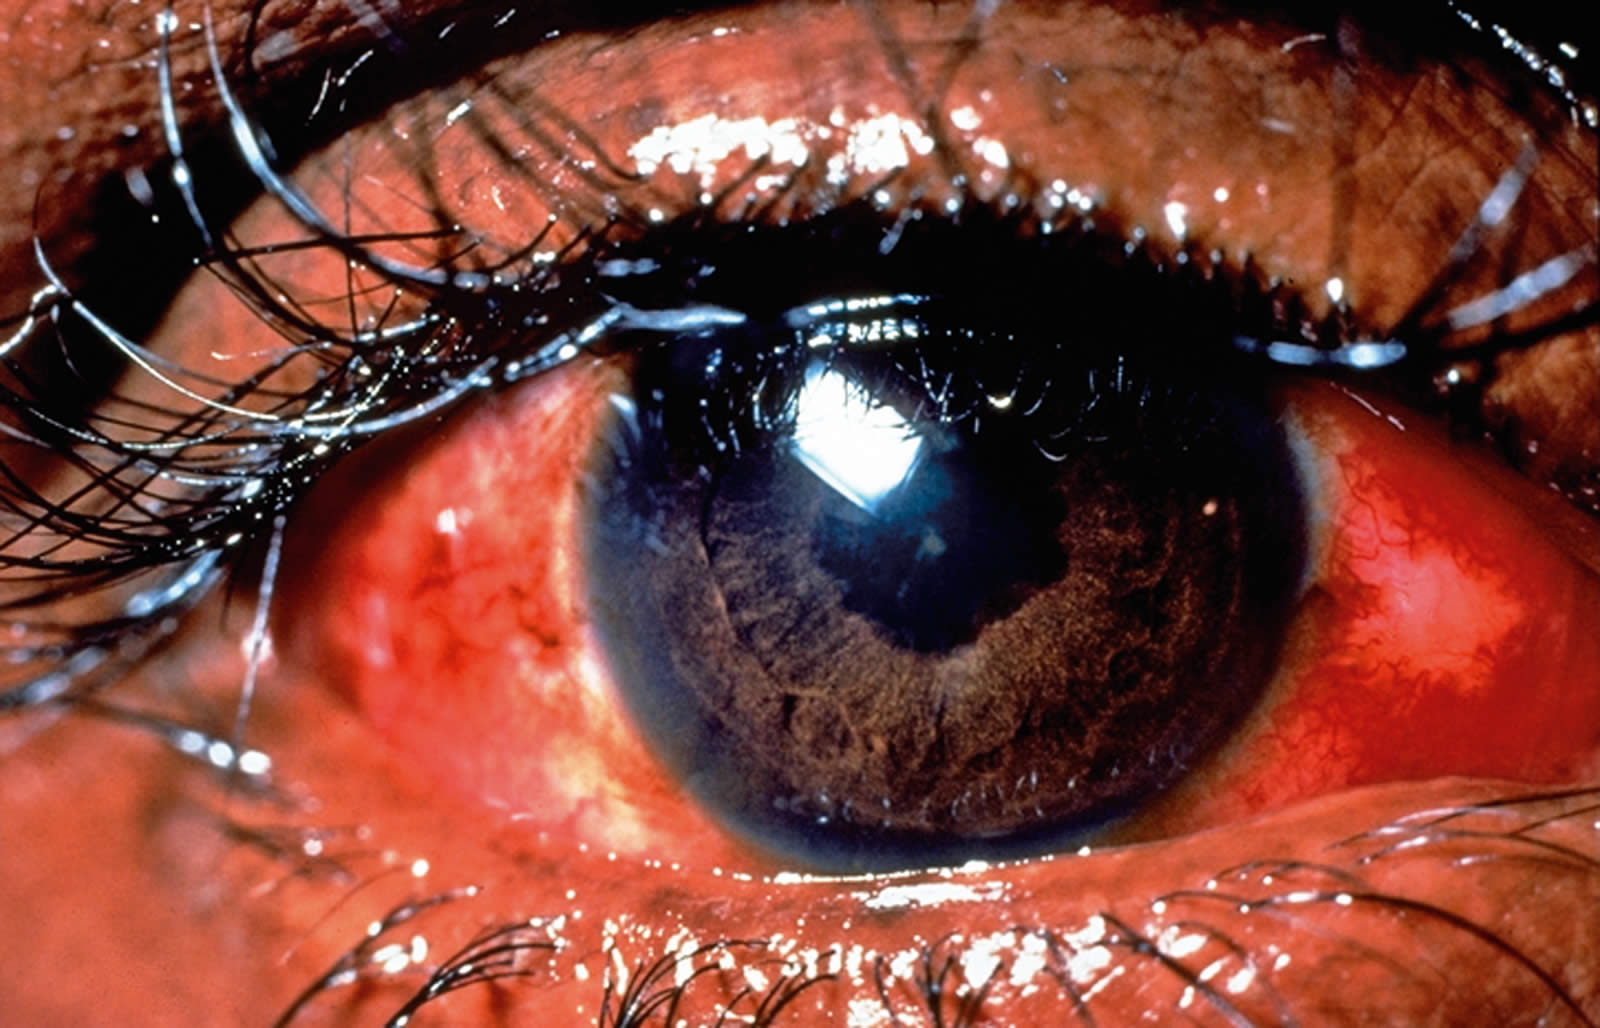 درمان قرمزی چشم